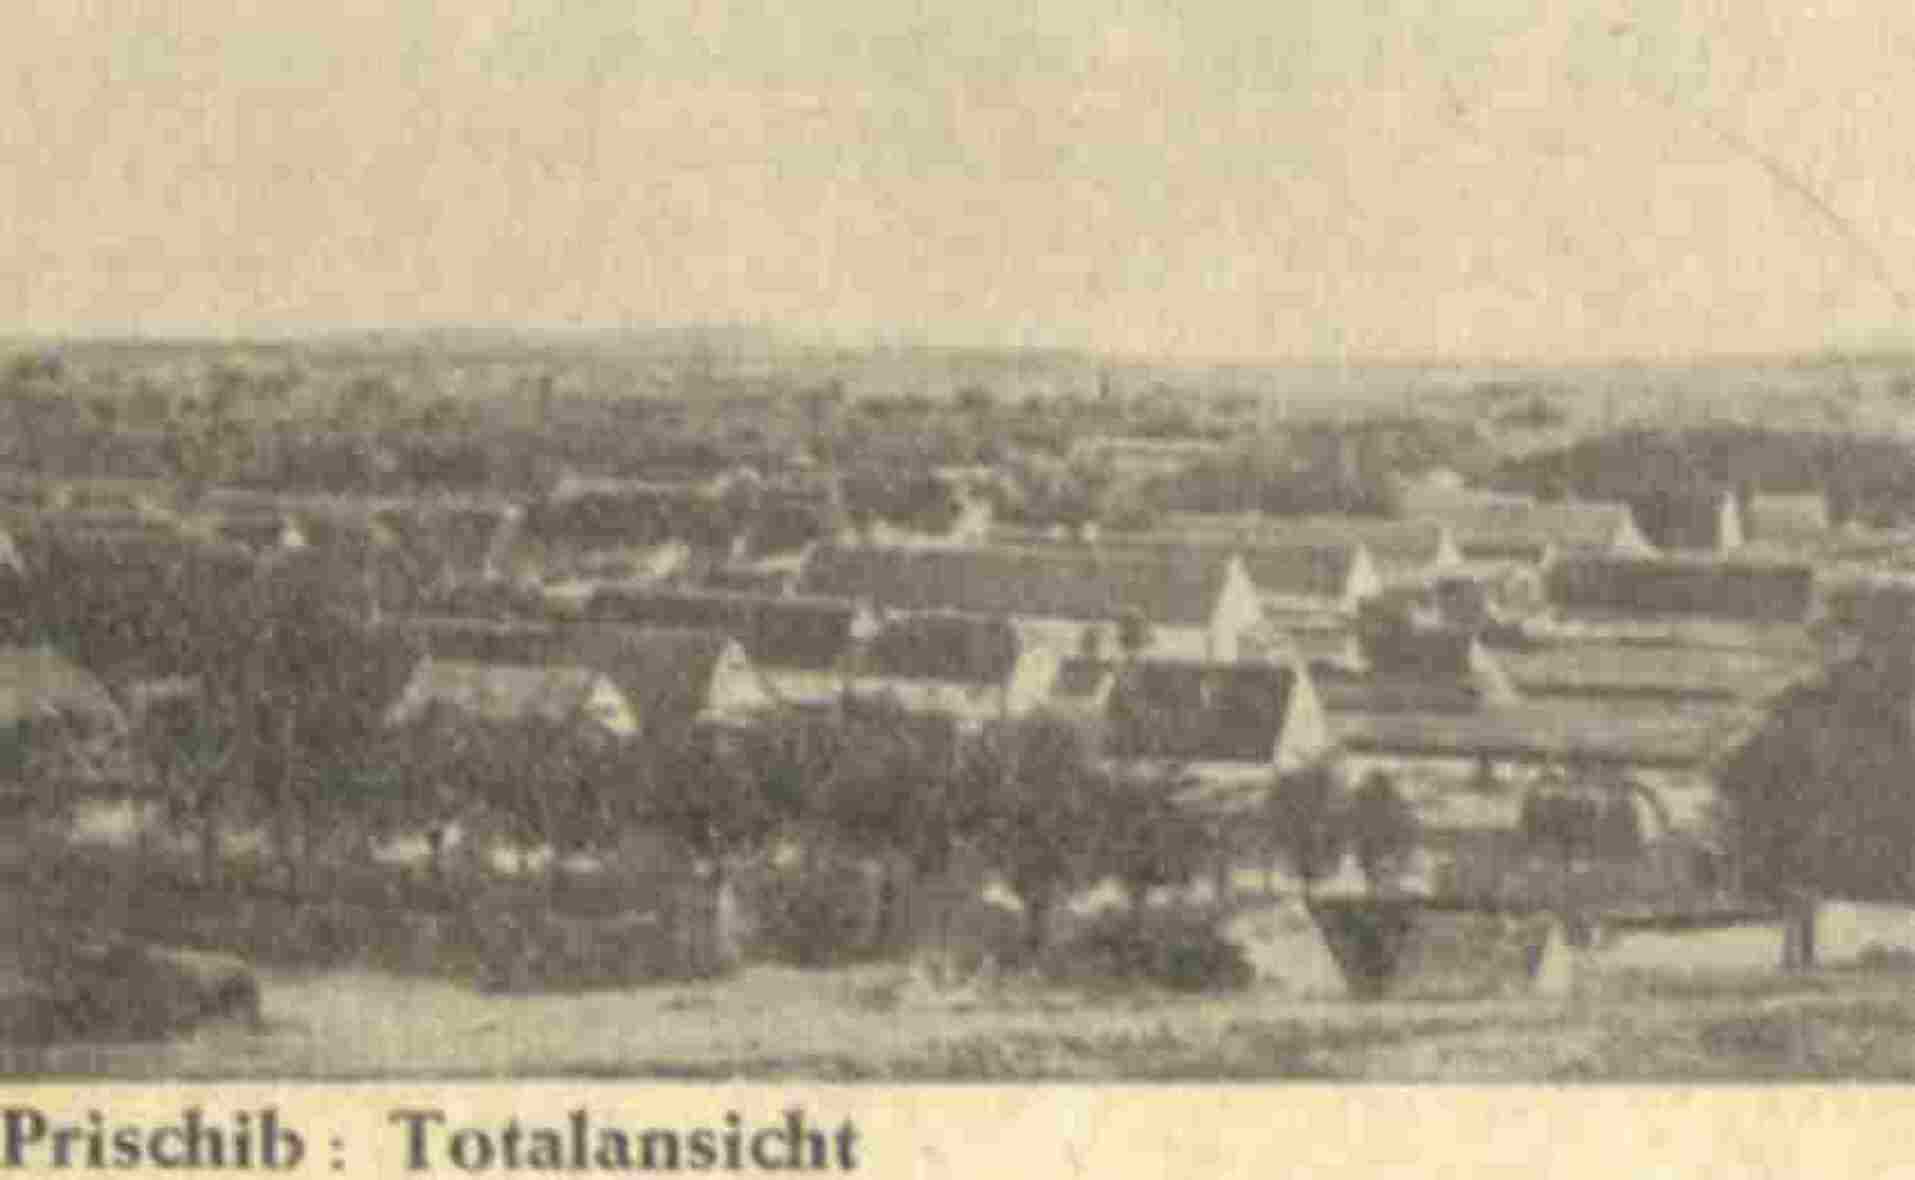 Prischib, Totalansicht. Prischib, 1918.